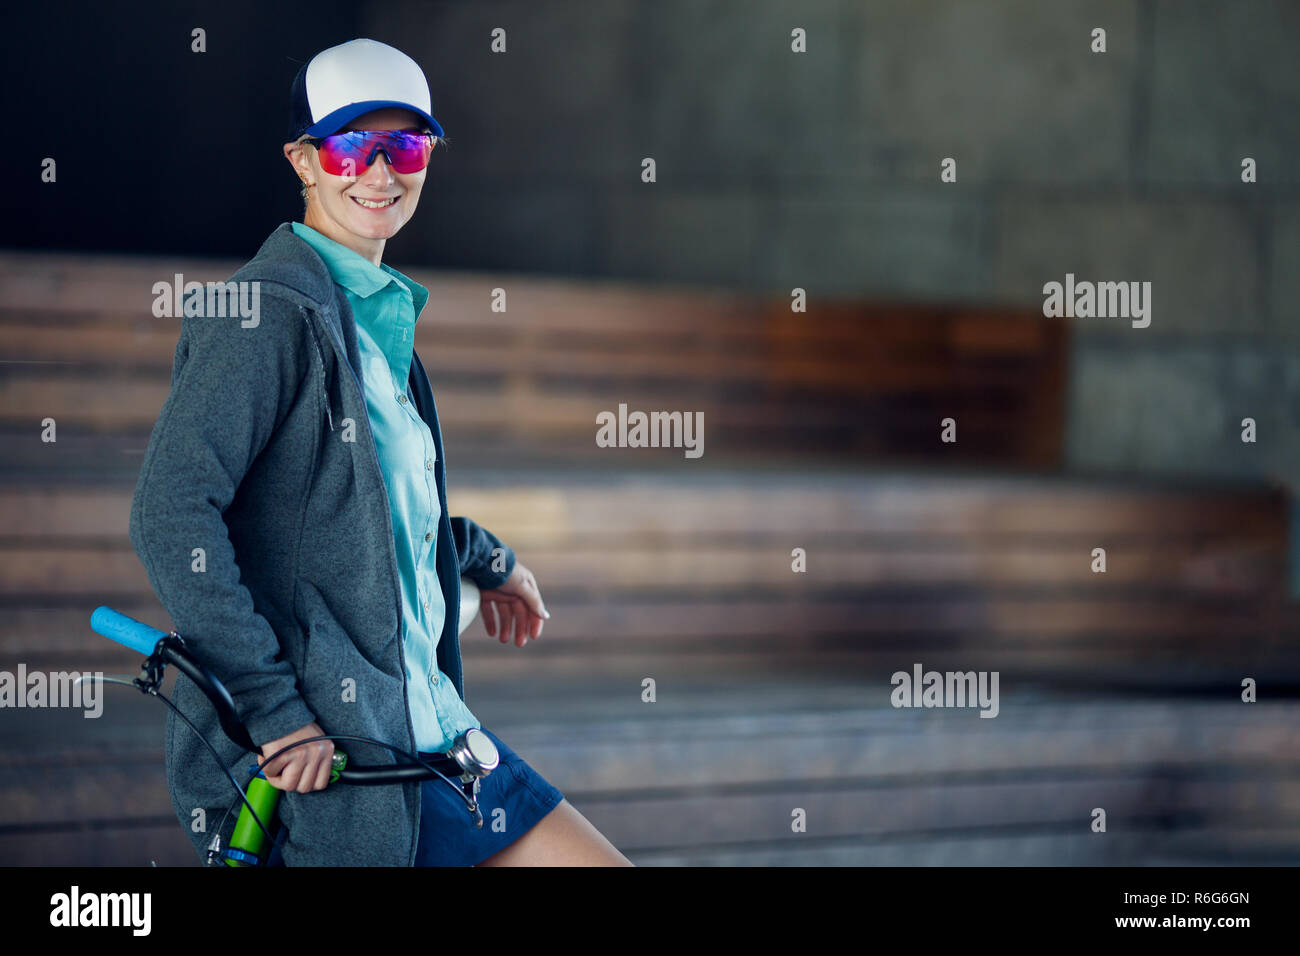 Mujer usa gafas de sol pasando el fin de semana en el esquí